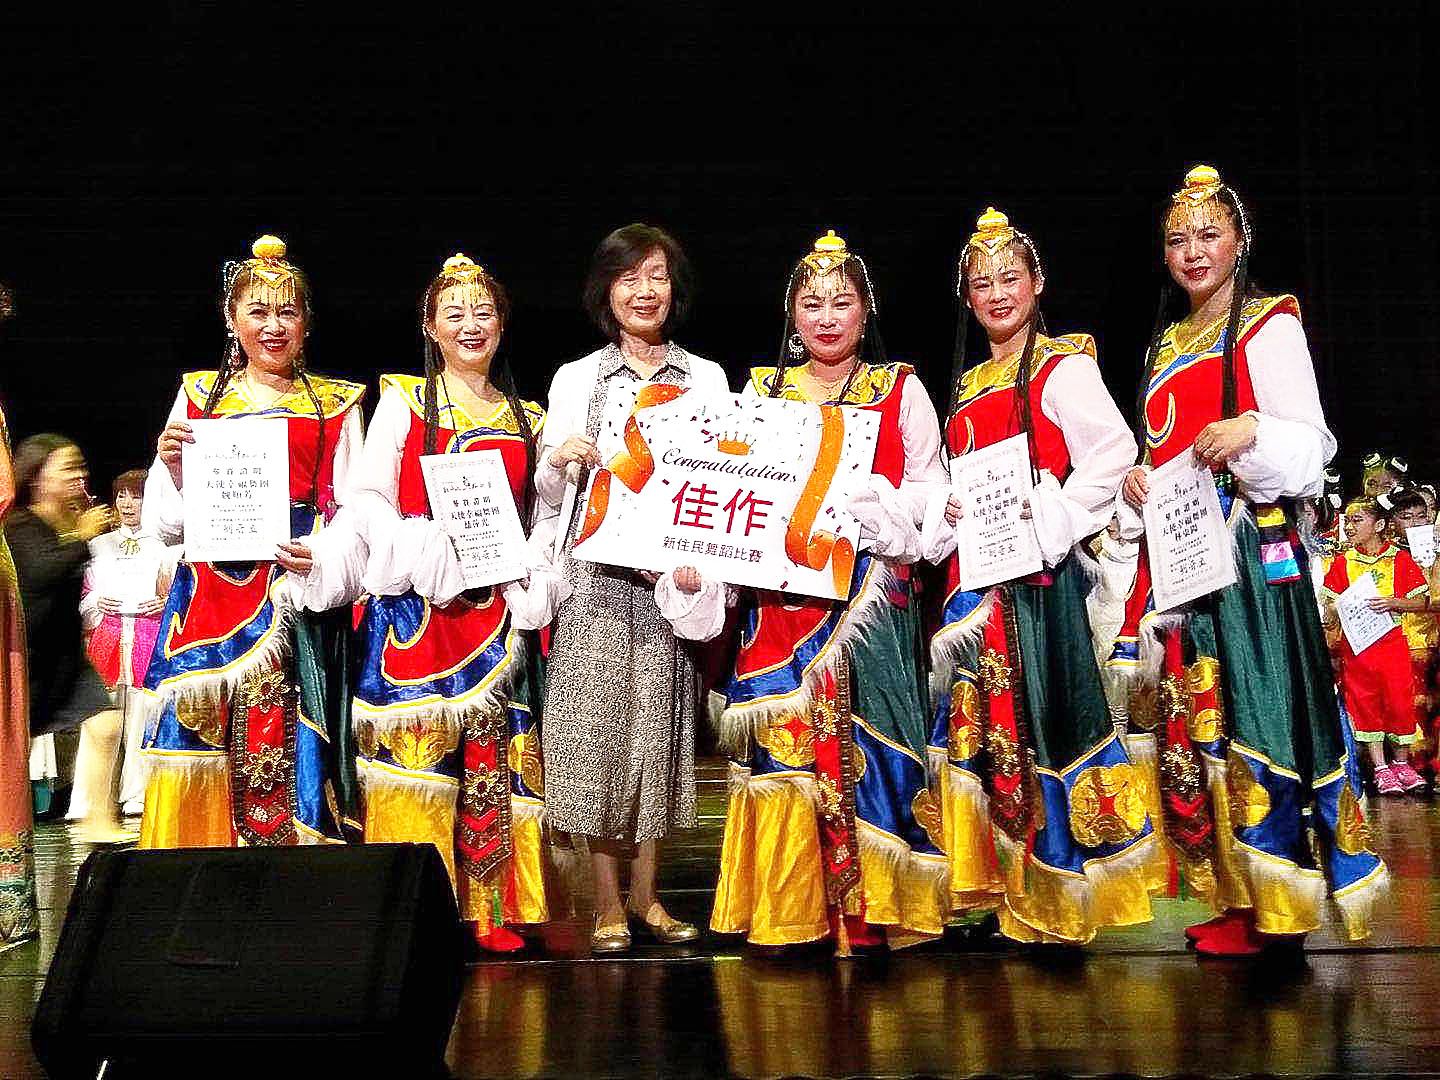 Grup tari Tianshi ditunjuk sebagai grup penari terbaik